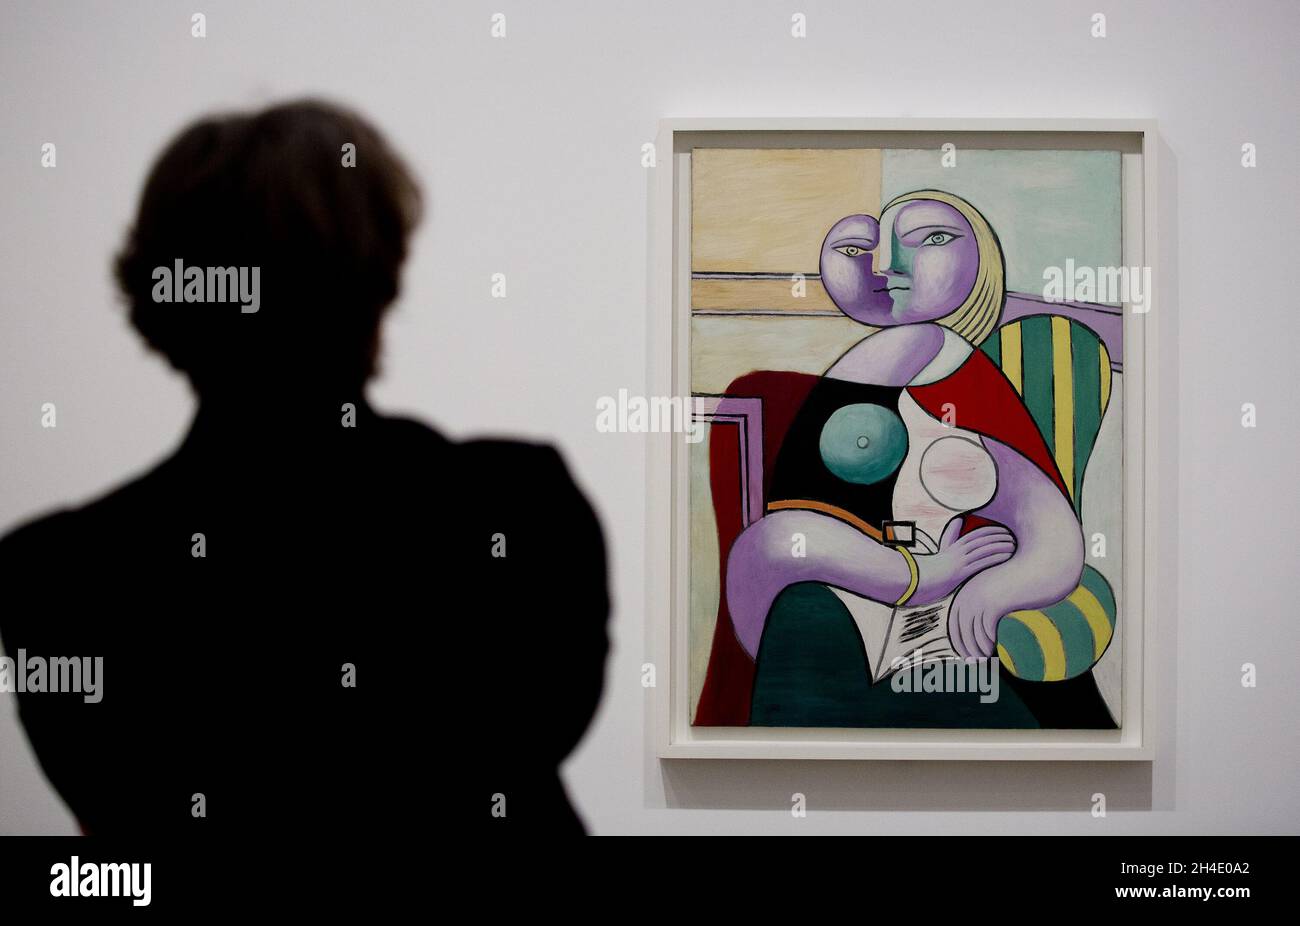 Un homme regardant la lecture de Pablo Picasso, 1932, pendant un aperçu de l'exposition Picasso 1932 - Amour, gloire, tragédie à Tate Modern à Londres.Photo datée du mardi 6 mars 2018.Crédit photo devrait se lire: Isabel Infantes / EMPICS Entertainment. Banque D'Images